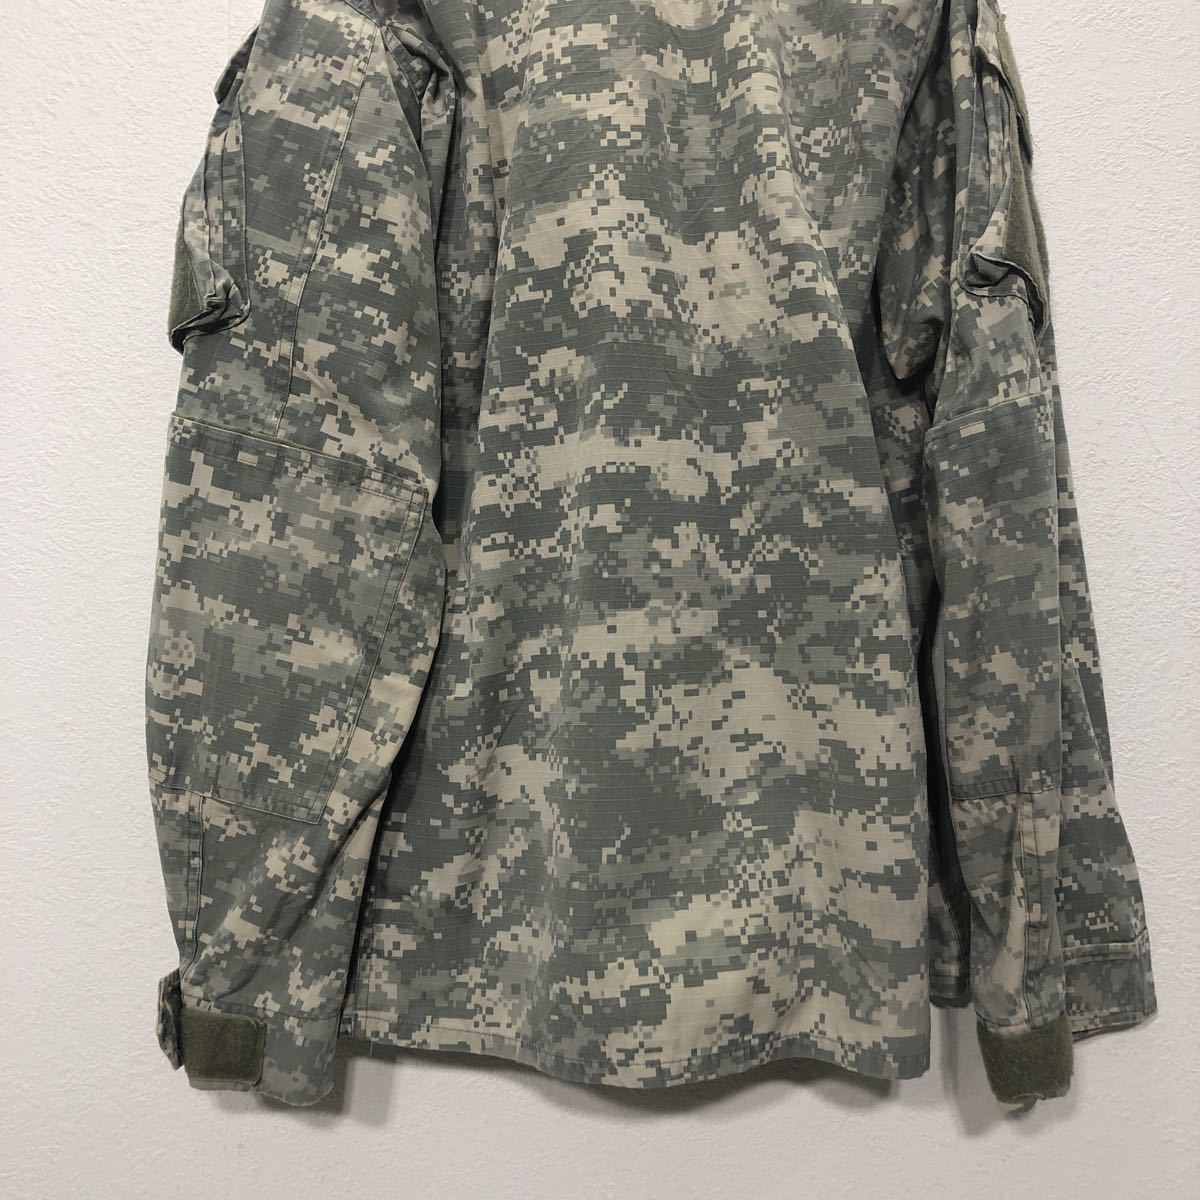  военный    цифровая ... ... пиджак   "губа" ... вершина  M размер    американская армия   0 5 лет   раз ... итого    бу одежда ...  Америка ... a502-5357